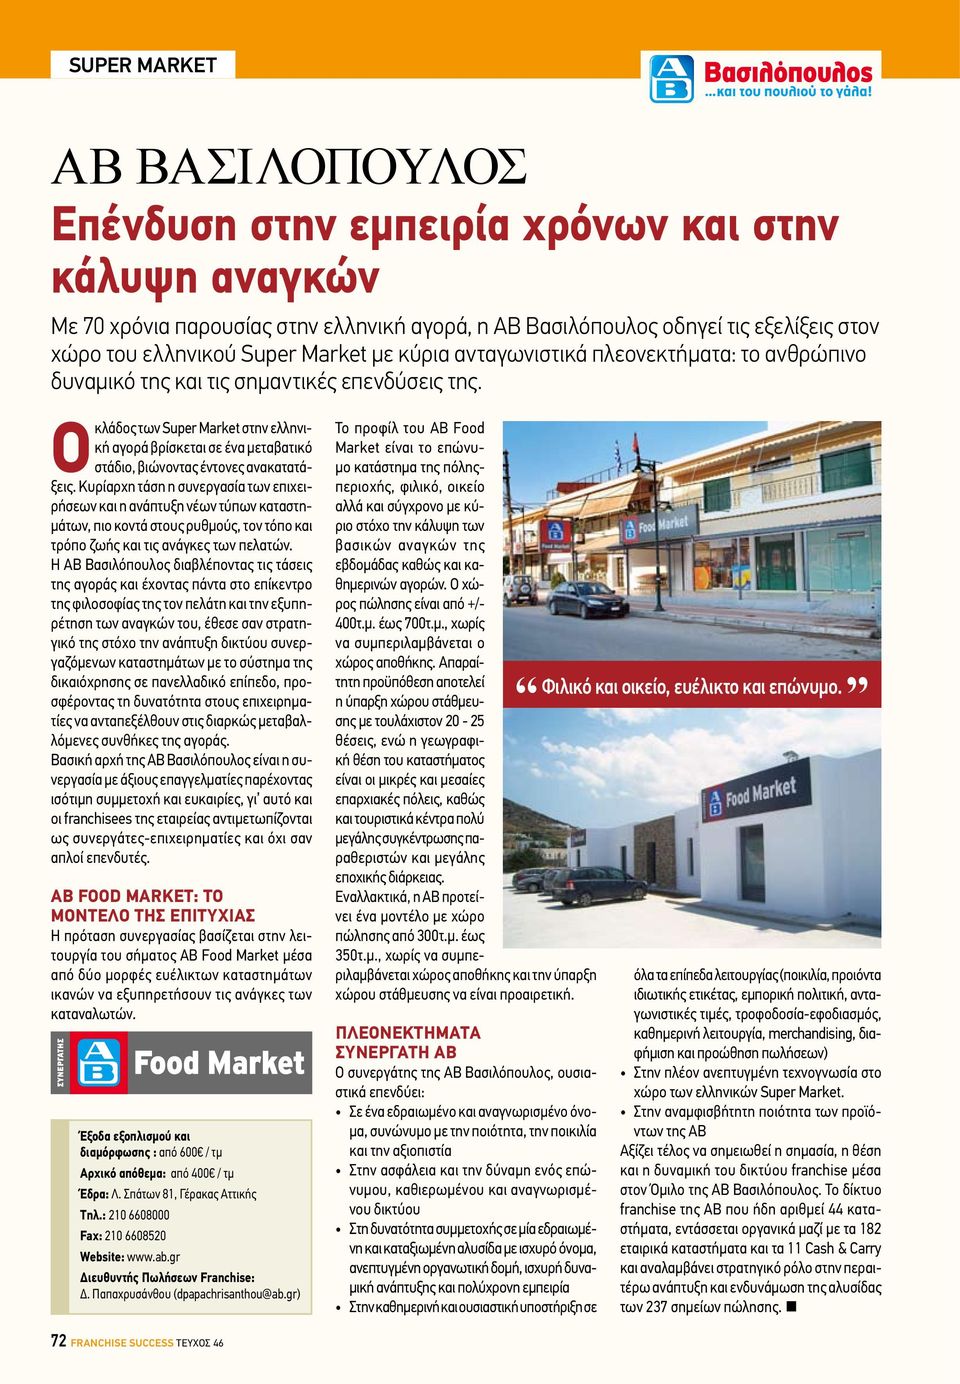 Ο κλάδος των Super Market στην ελληνική αγορά βρίσκεται σε ένα μεταβατικό στάδιο, βιώνοντας έντονες ανακατατάξεις.